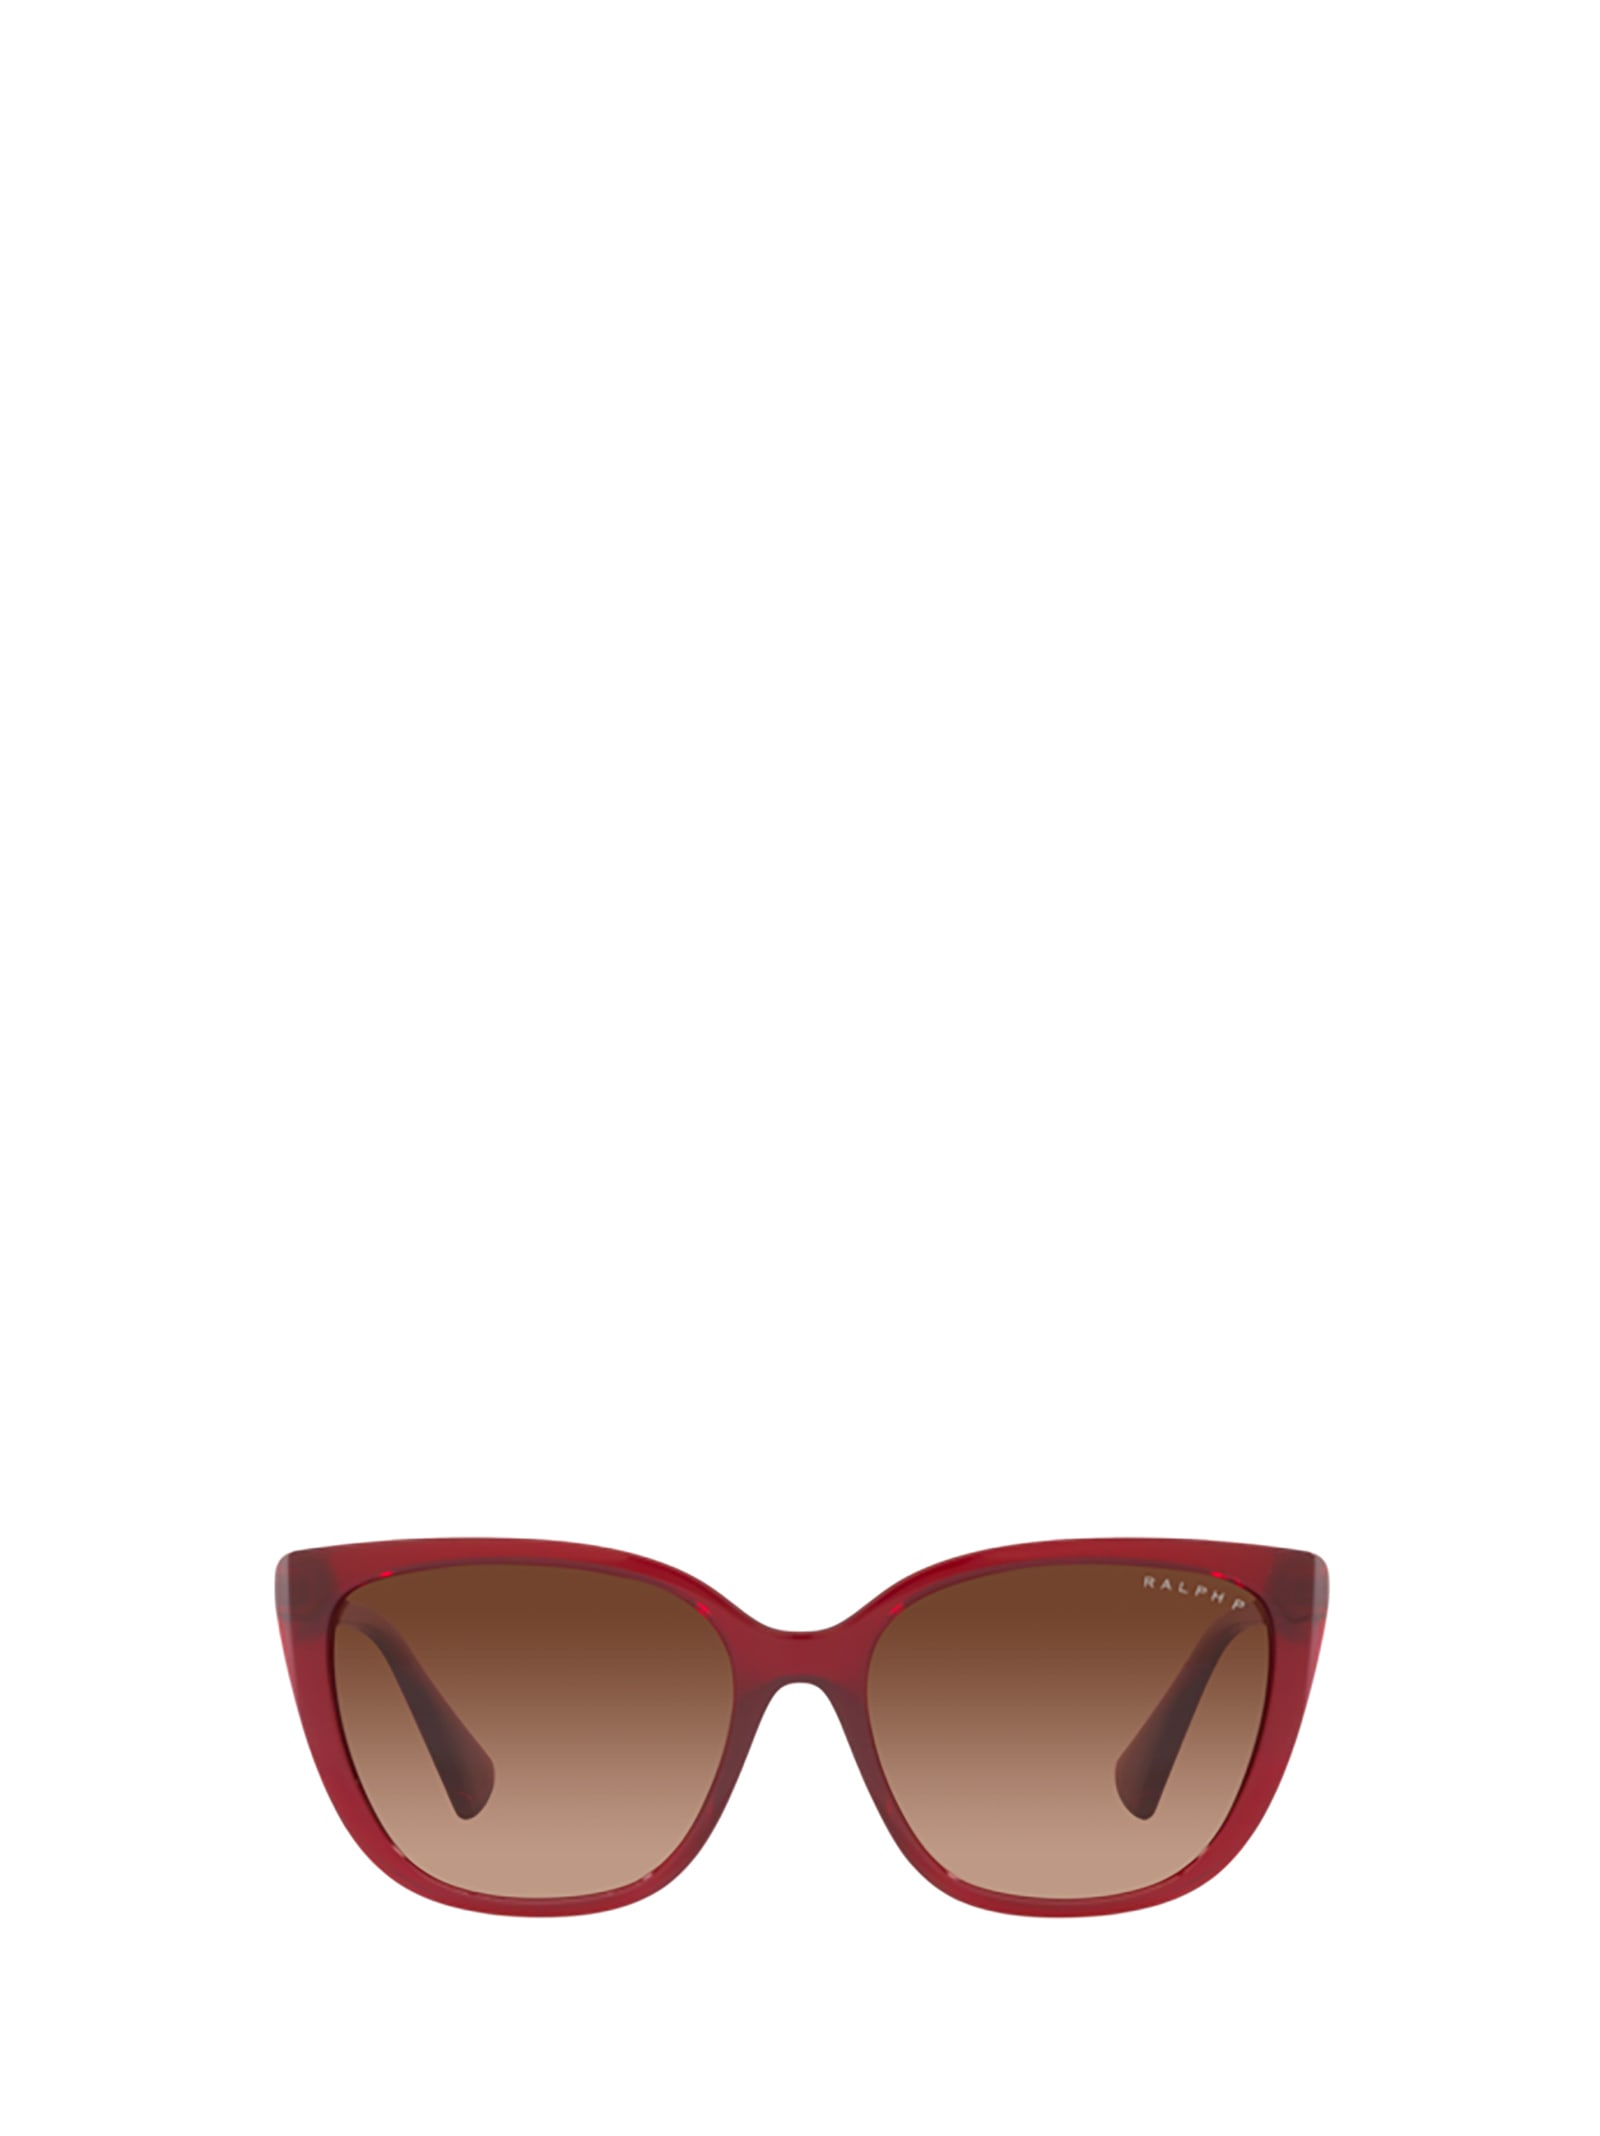 Polo Ralph Lauren Ra5274 Transparent Bordeaux Sunglasses